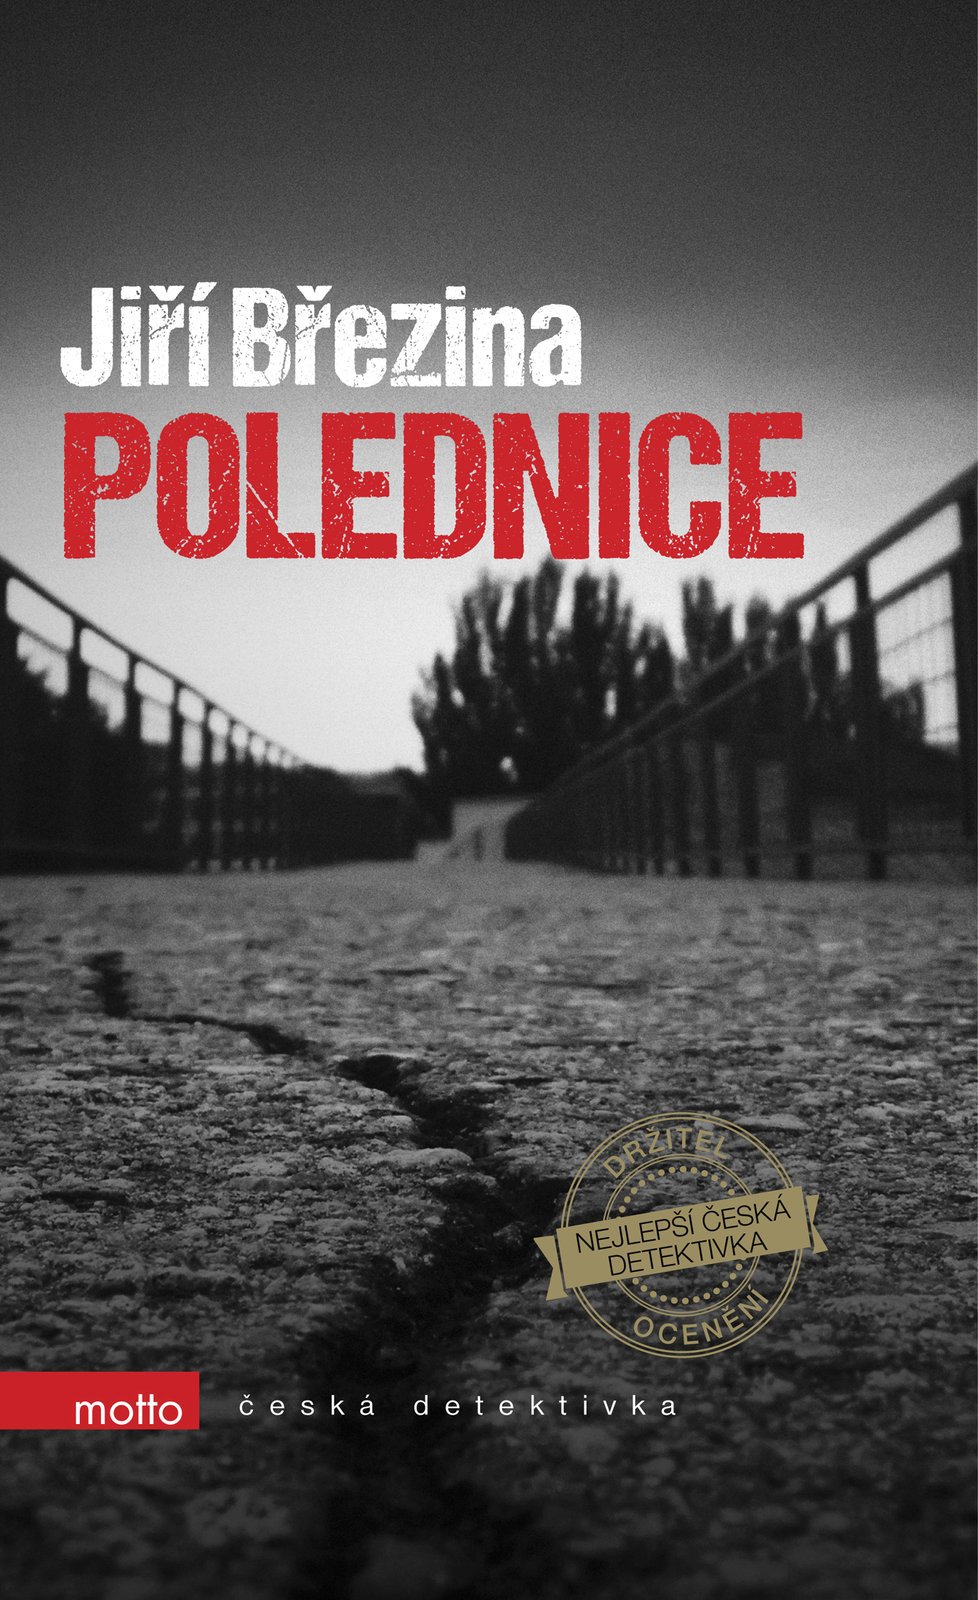 Jiří Březina, Polednice, Motto, 248 stran, 212 Kč